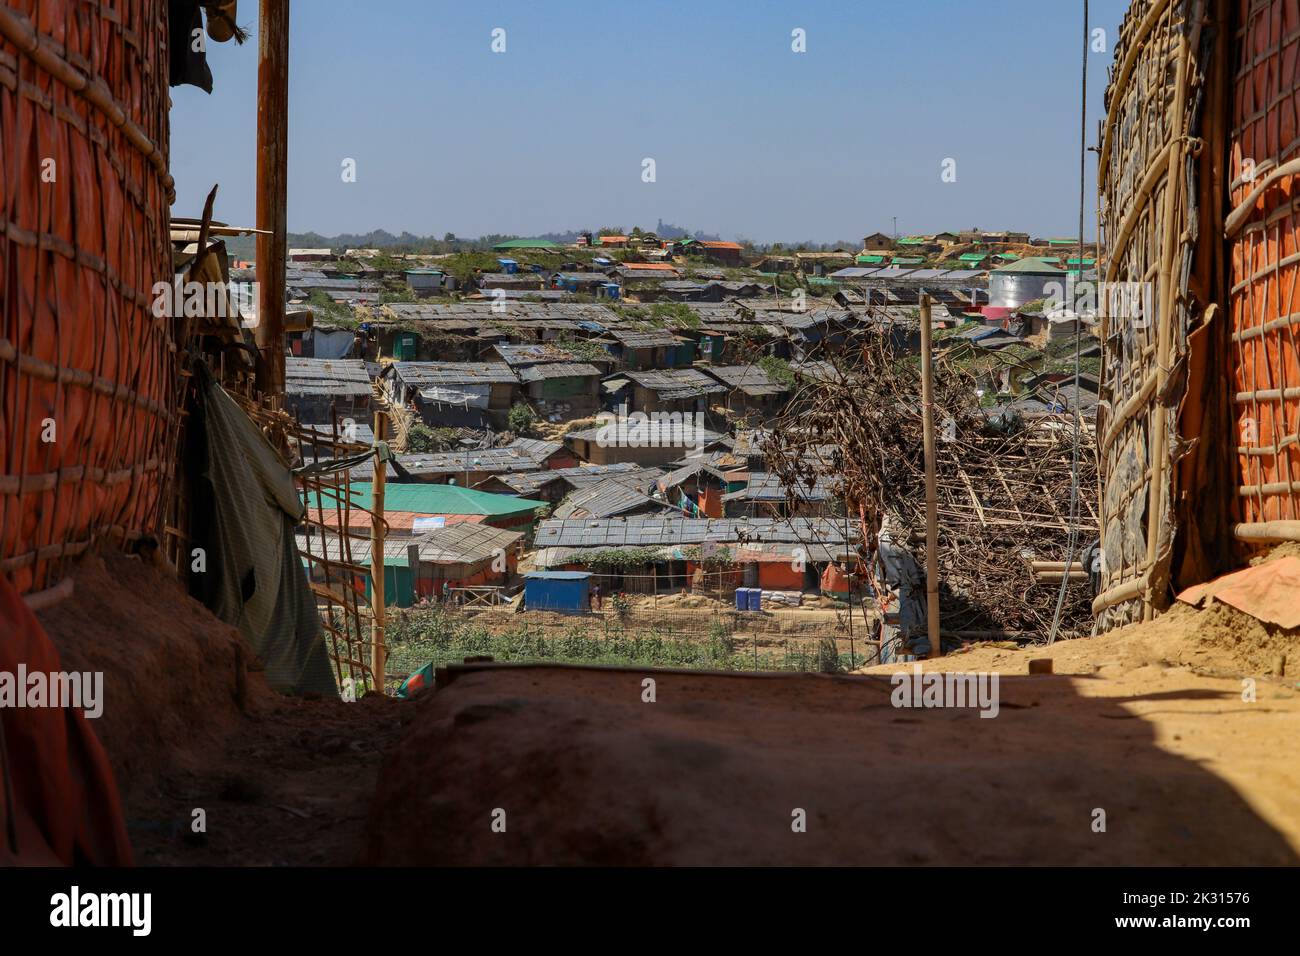 Landscape of Balukhali Rohingya refugee camp in Ukhia, Cox's Bazar, Bangladesh Stock Photo